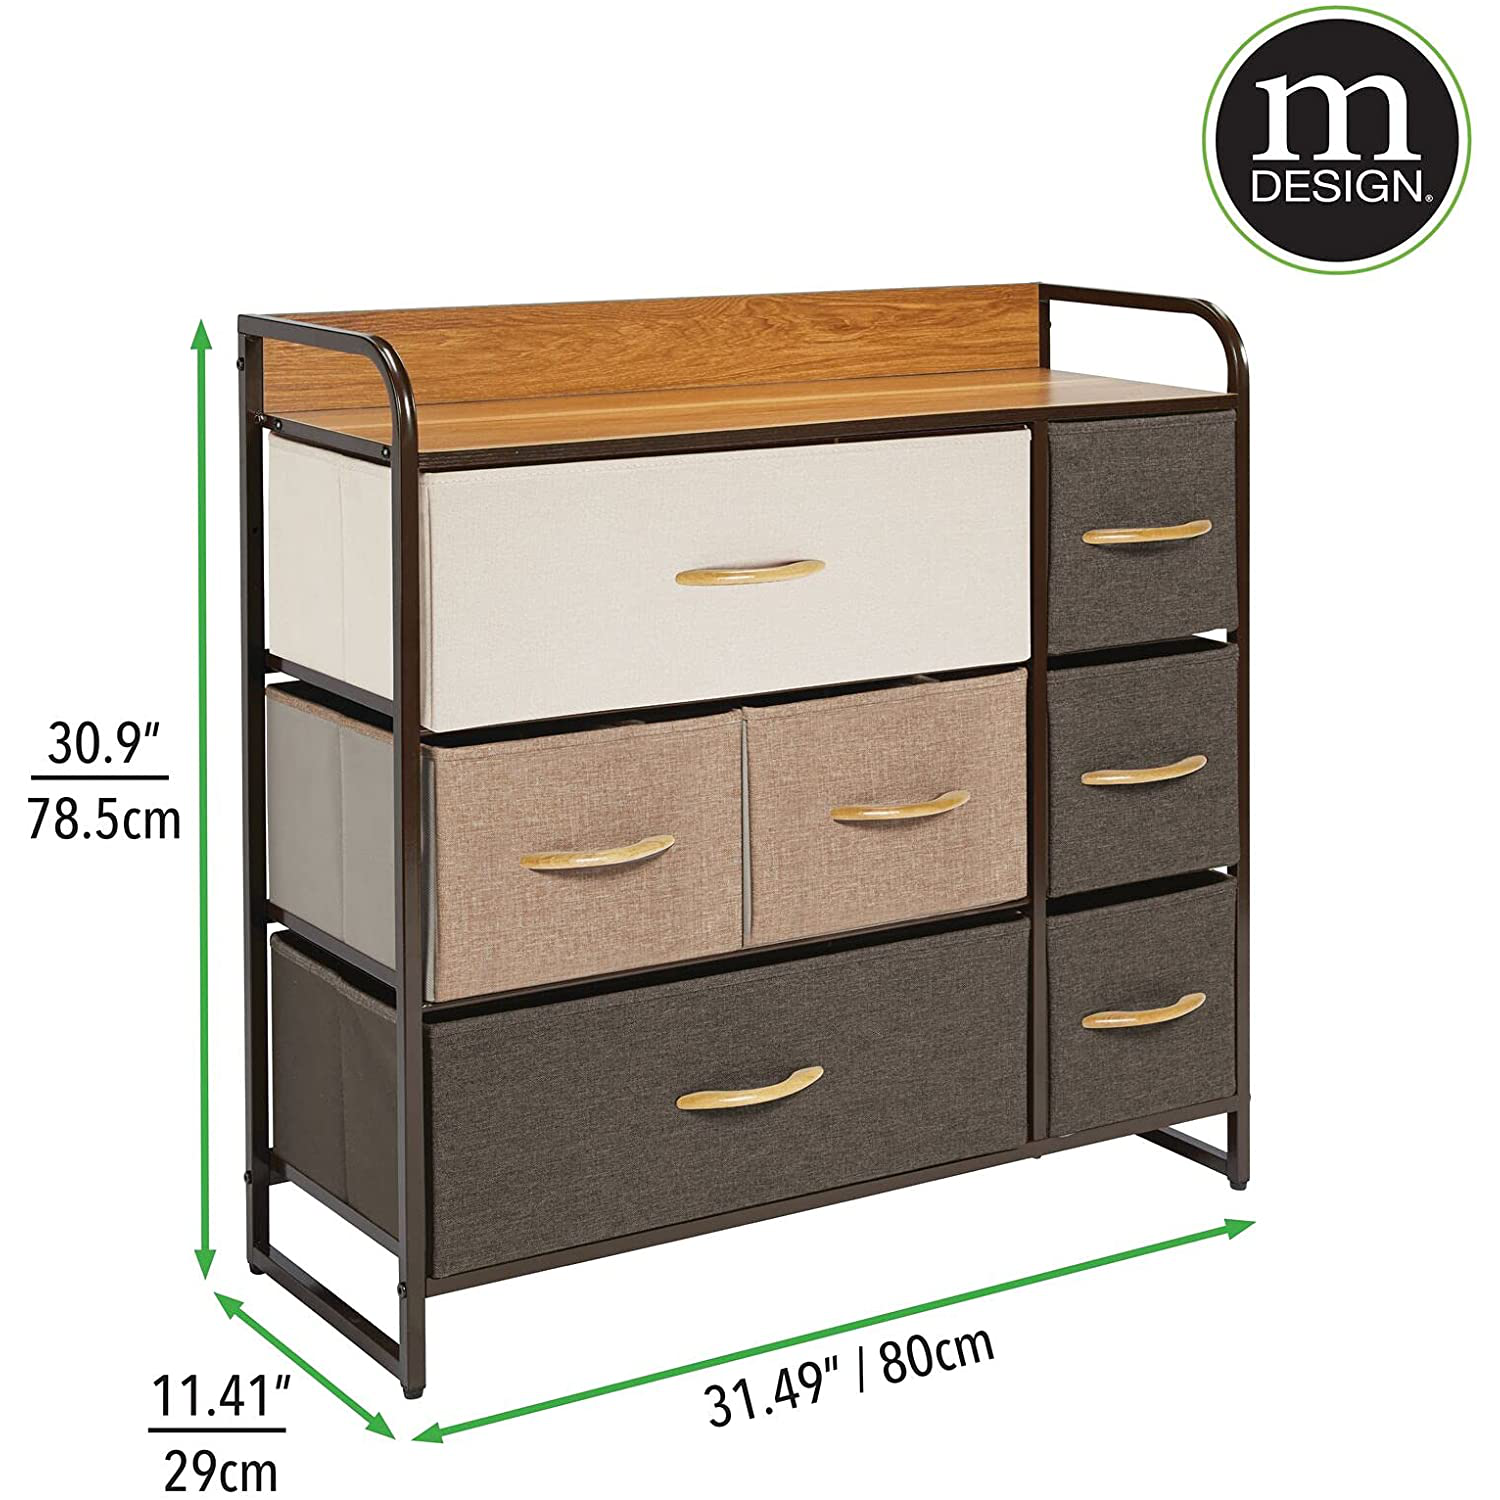 Dresser Storage Furniture Organizer - Large Standing Unit